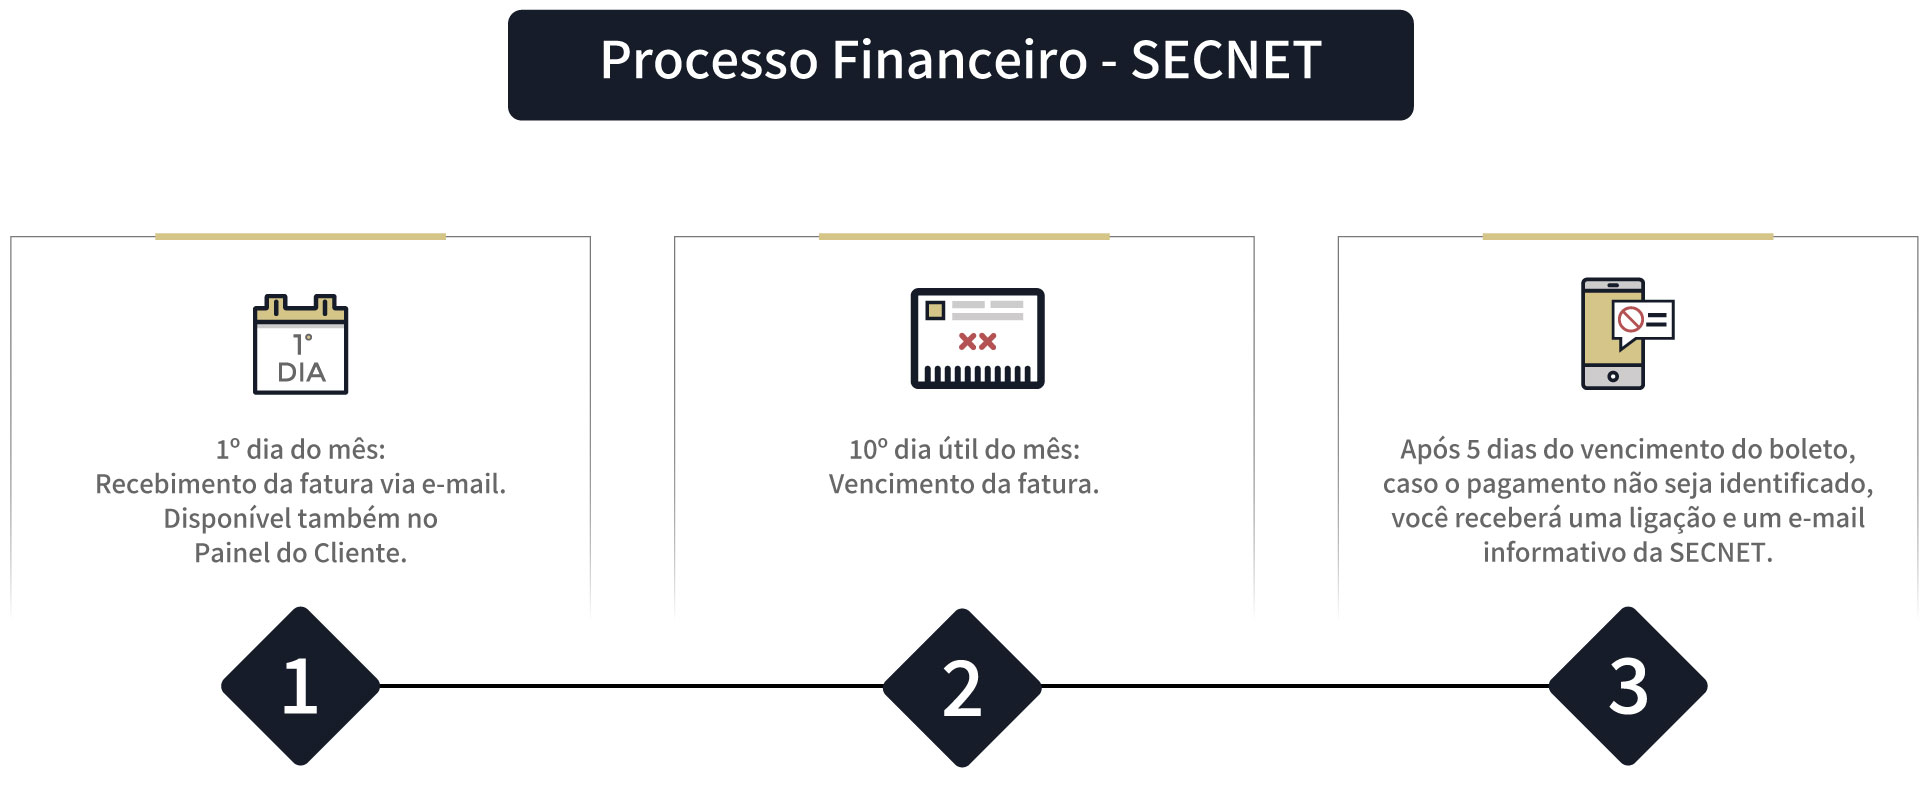 Como funcionam as políticas financeiras da SECNET?